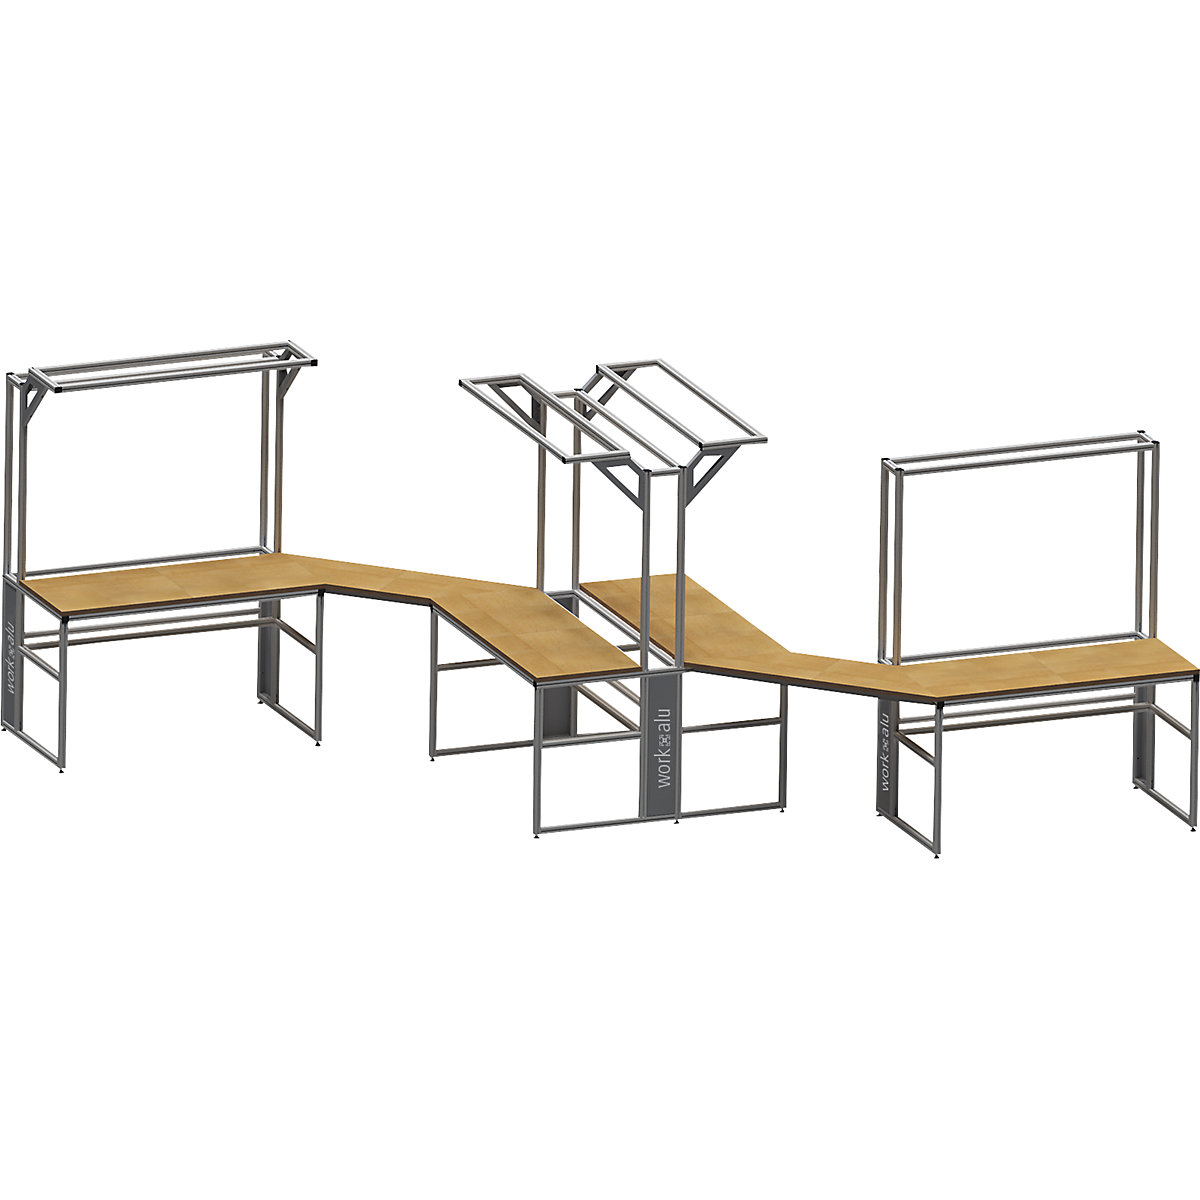 Stół warsztatowy aluminiowy workalu®, szkielet podstawowy – bedrunka hirth (Zdjęcie produktu 2)-1